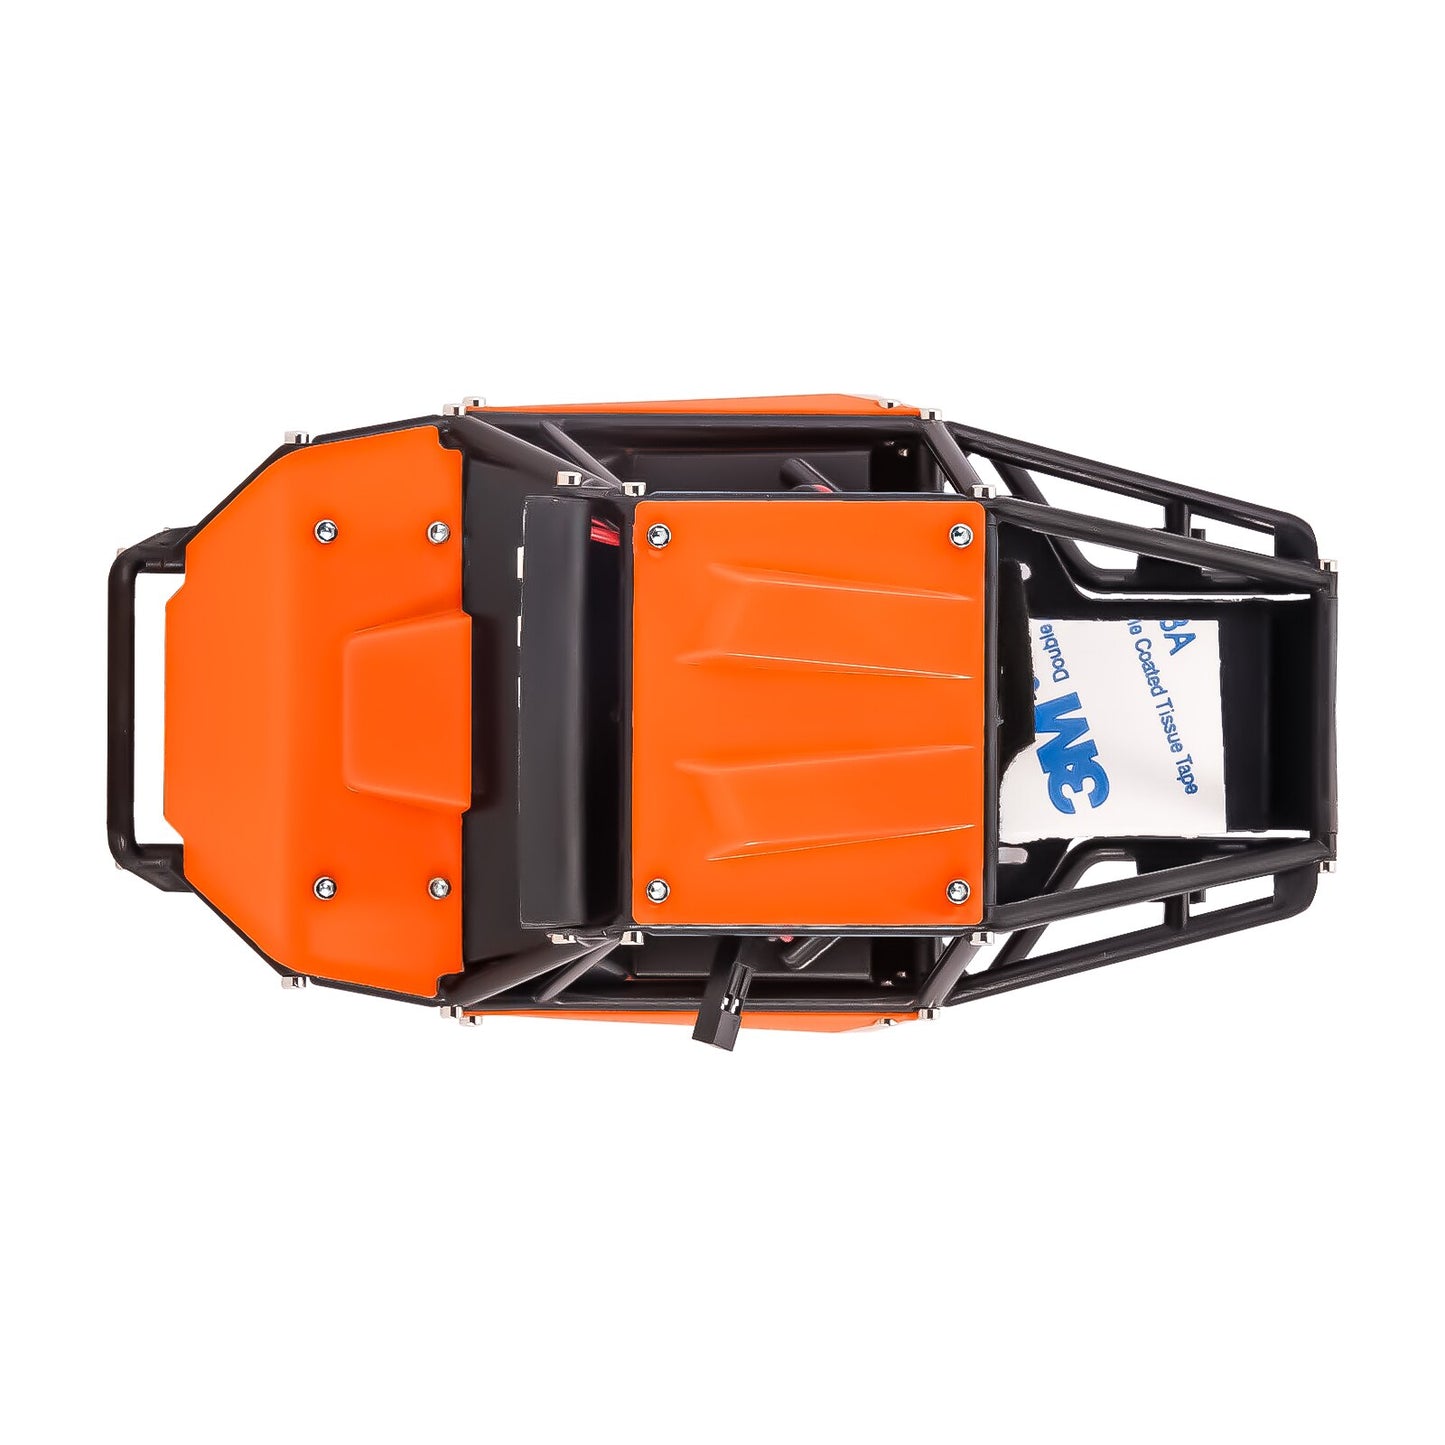 INJORA Nylon Rock Buggy Body Shell Kit telaio per 1/24 RC Crawler Car Axial SCX24 C10 JEEP JLU Bronco Parti di aggiornamento